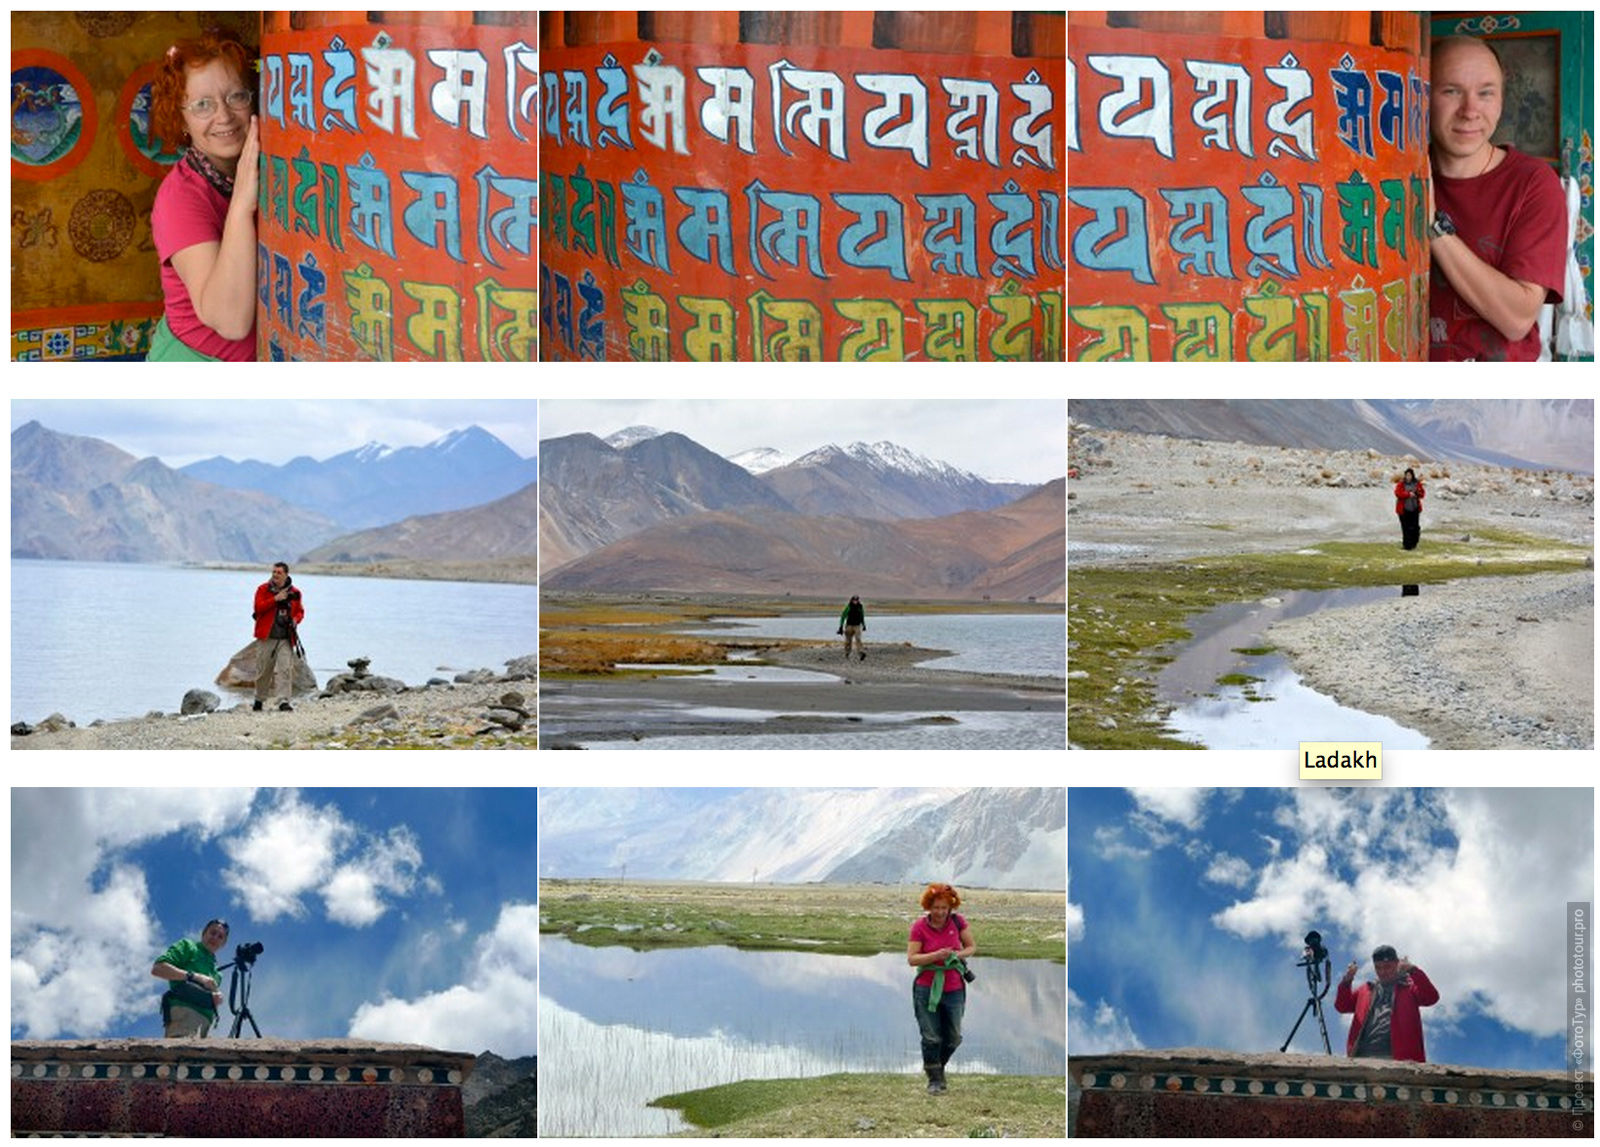 Рекламный фототур в Тибет: Долины Ладакх, Ламаюру и Нубра, 24 мая - 2 июня 2014 года.